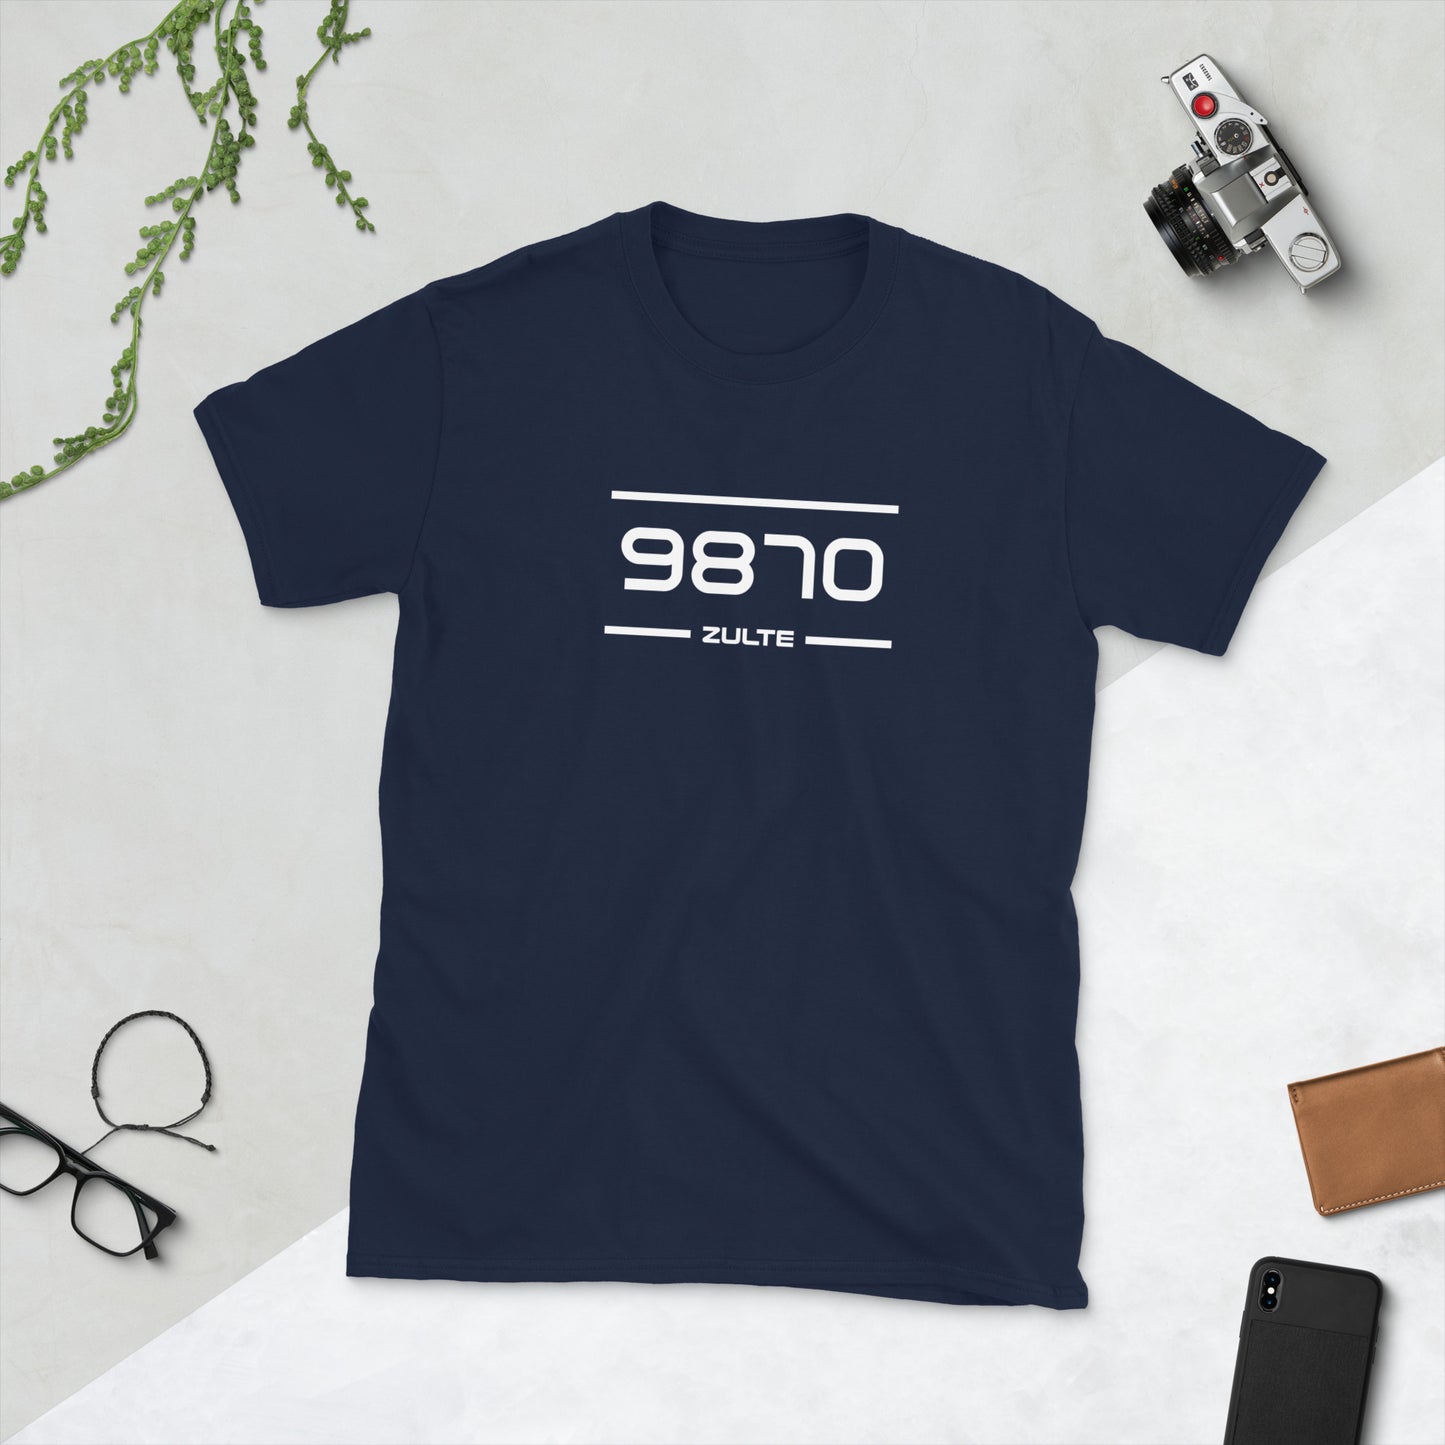 Tshirt - 9870 - Zulte